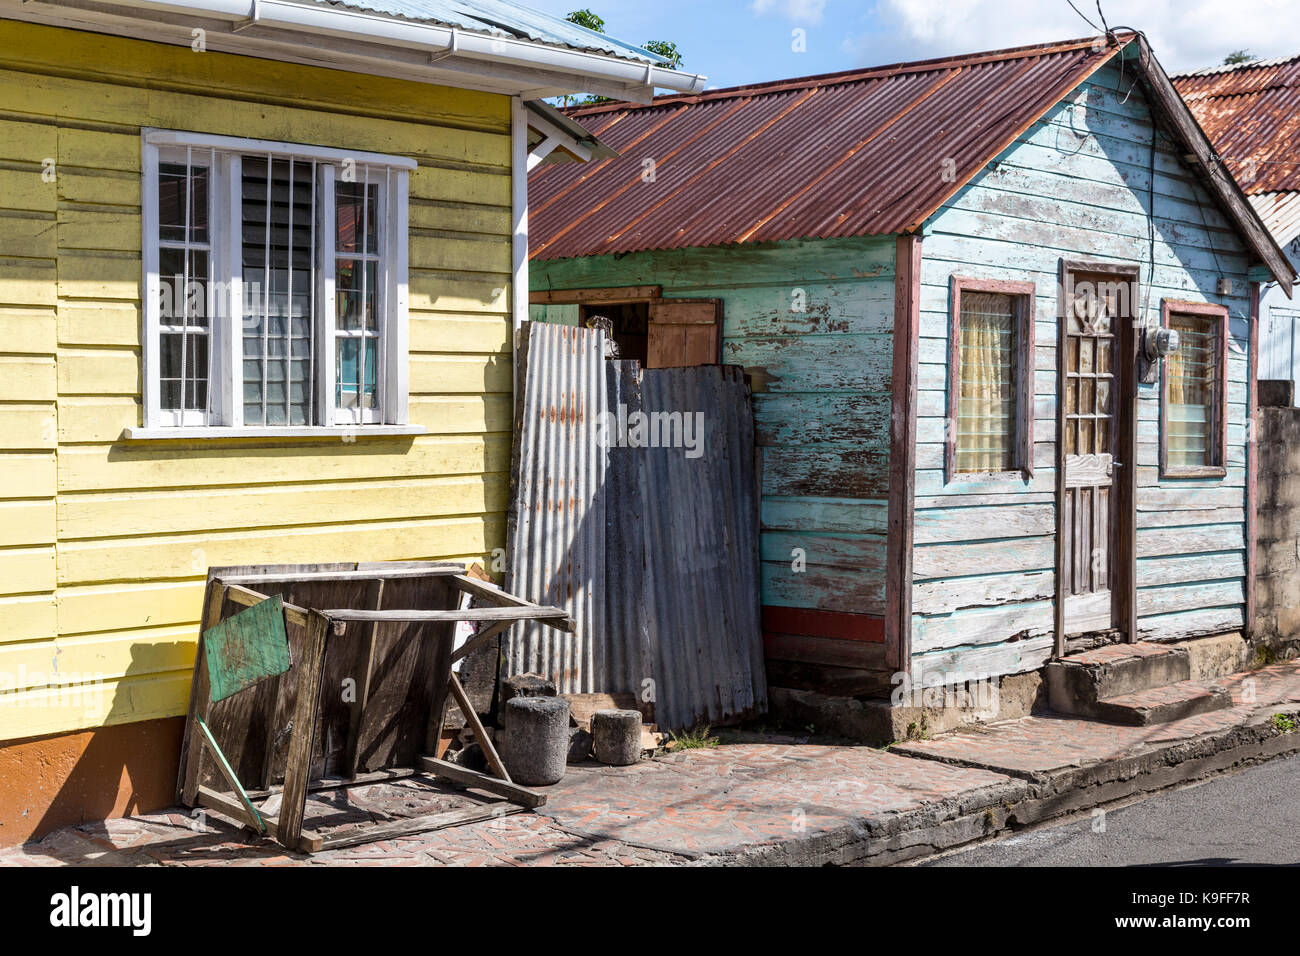 Anse La Raye, St. Lucia. Schlechte Person's House in der Nähe der Waterfront. Für die redaktionelle Verwendung. Stockfoto